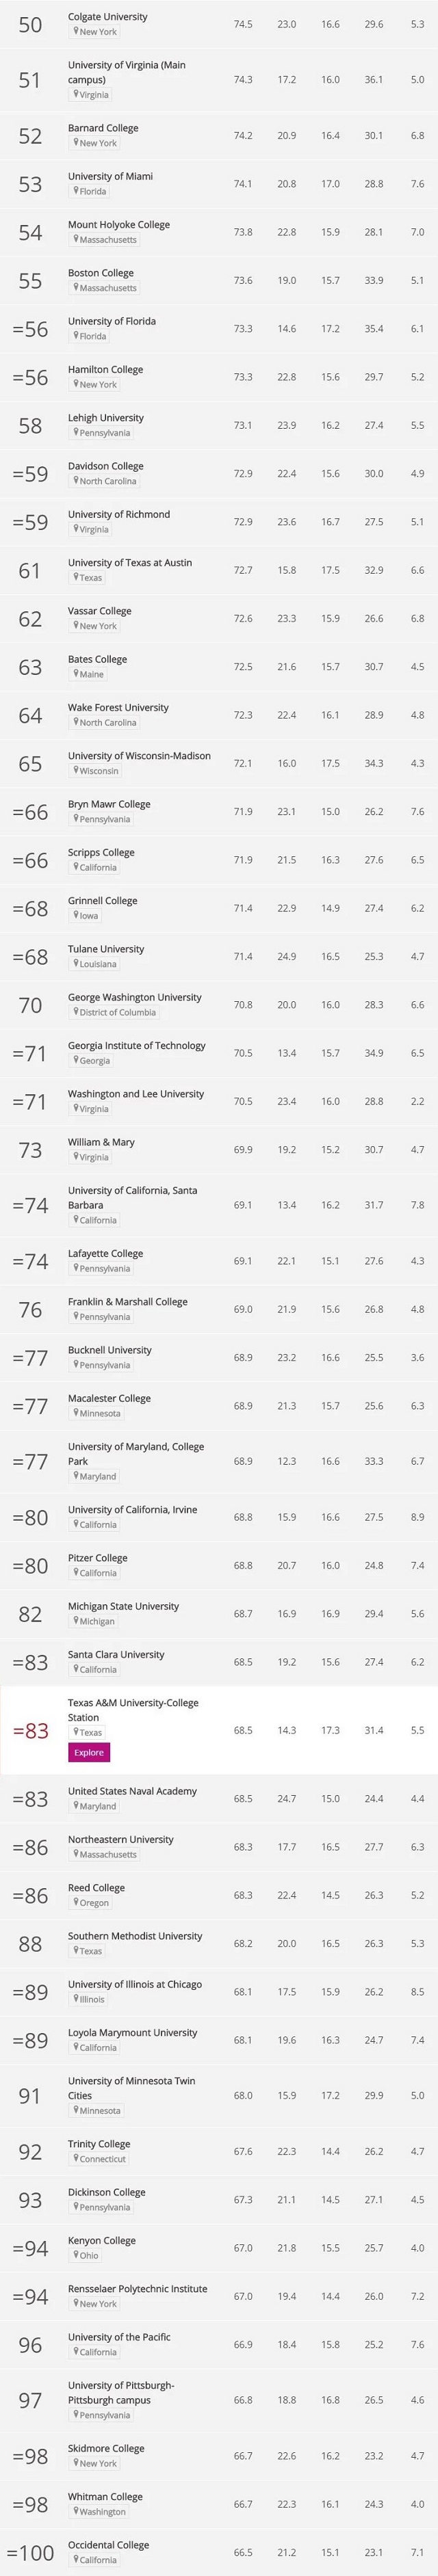 2021全美最佳大学排名Top100-2.jpg